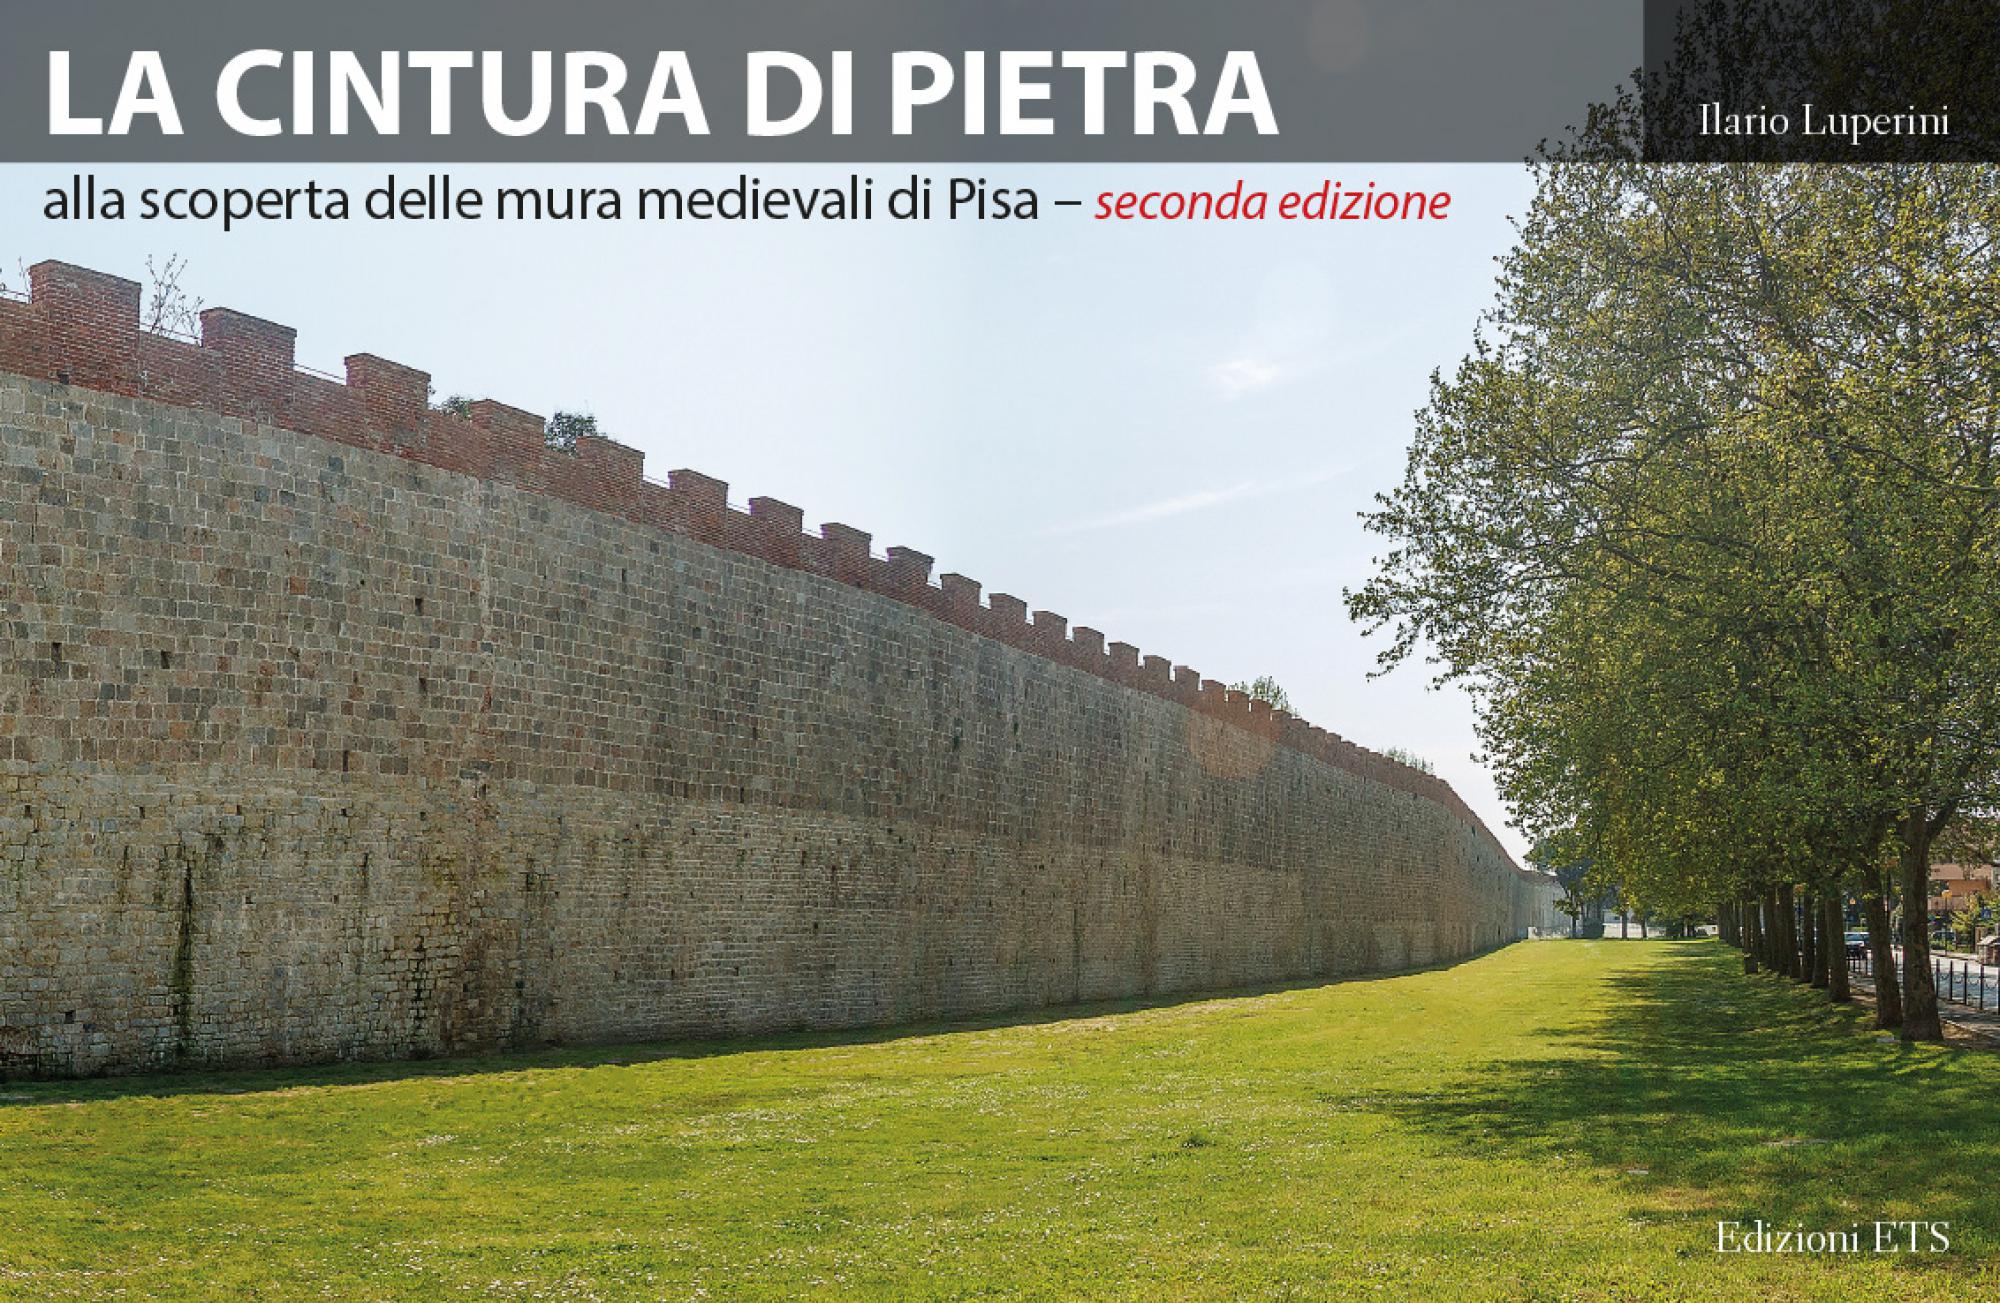 La cintura di pietra.alla scoperta delle mura medievali di Pisa